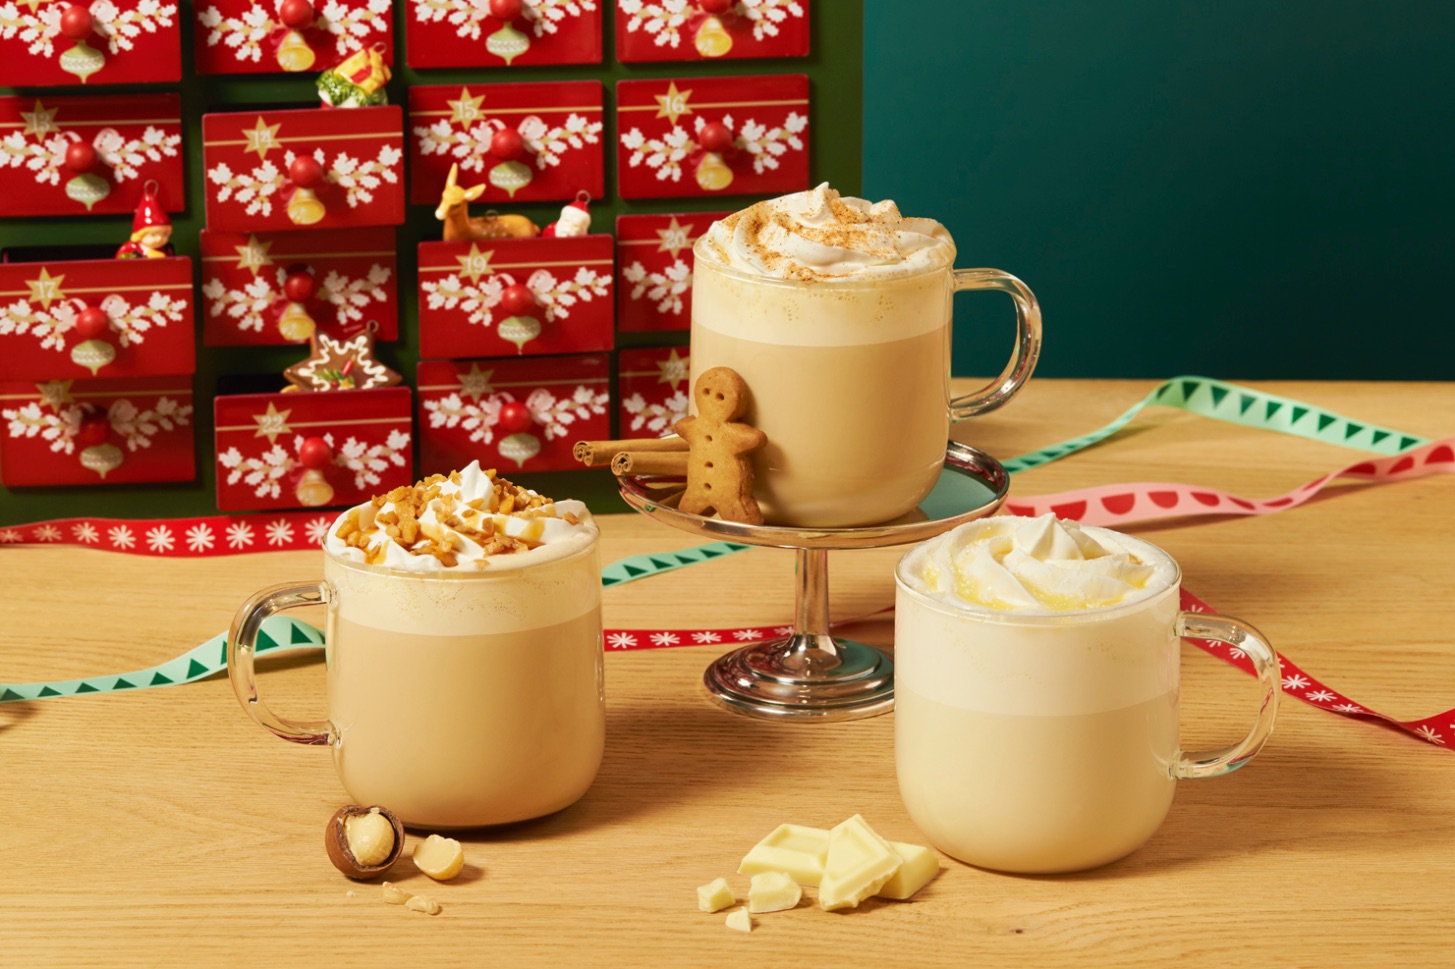 スターバックス ベリー×ベリー レアチーズ フラペチーノ® Starbucks Christmas drinks 2020 星巴克